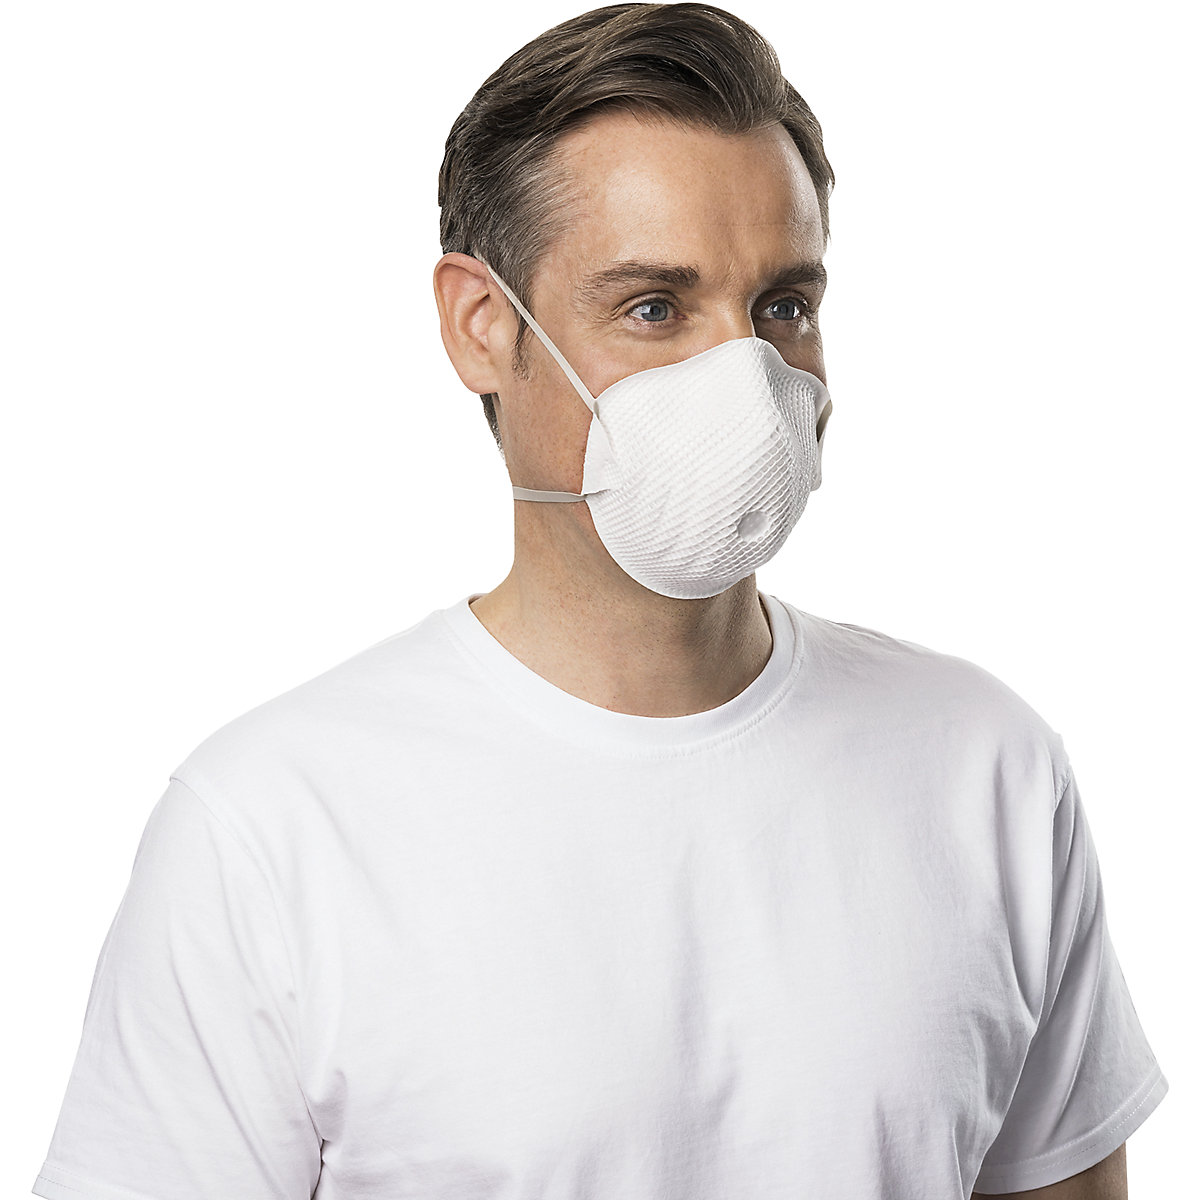 FFP2 NR D légzésvédő maszk – MOLDEX (Termék képe 4)-3